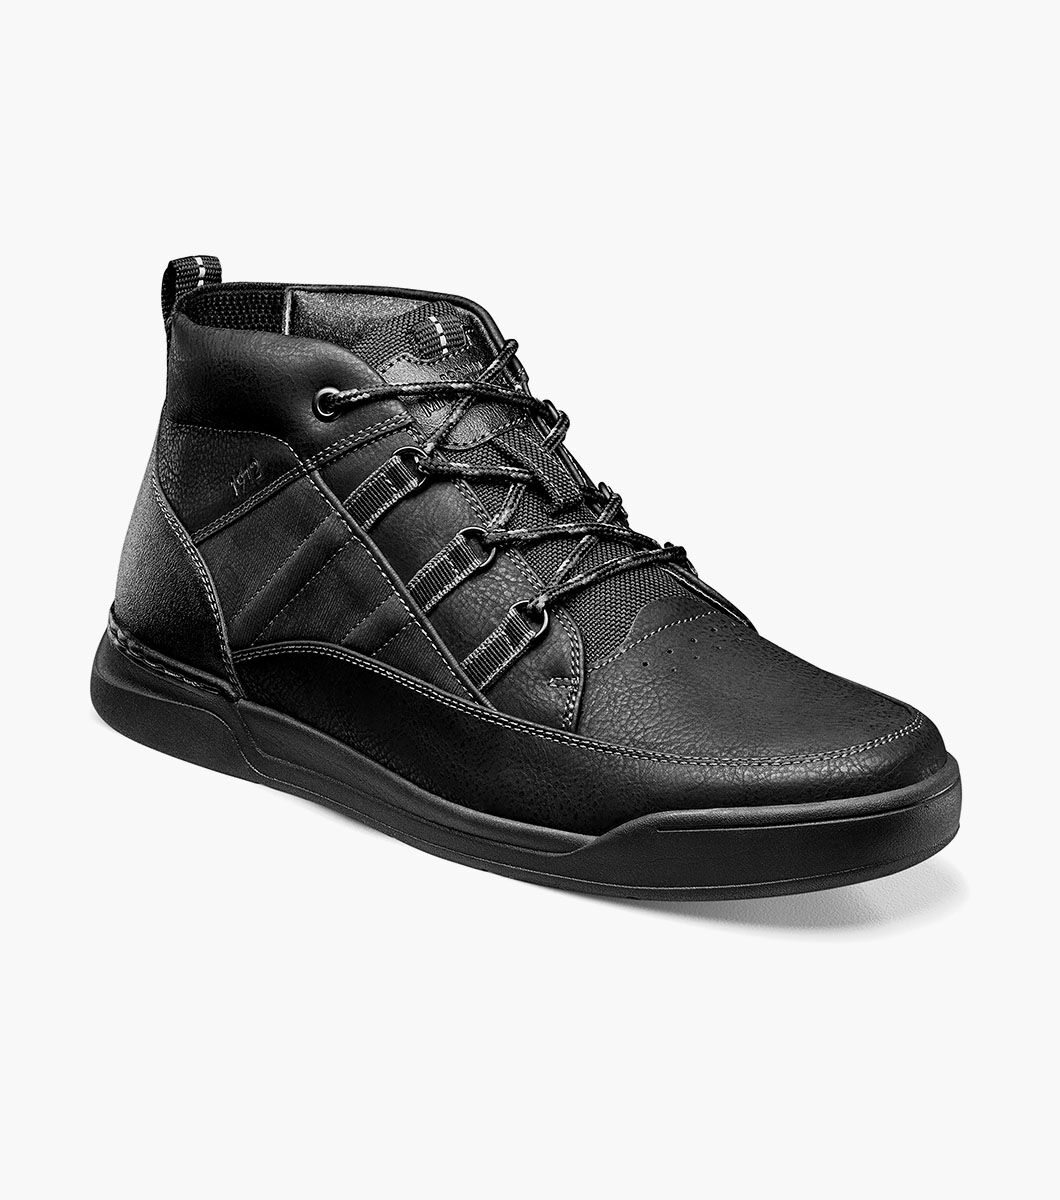 Nunn Bush Shoes Tour Work Moc Toe Sneaker Boot Black Size 12